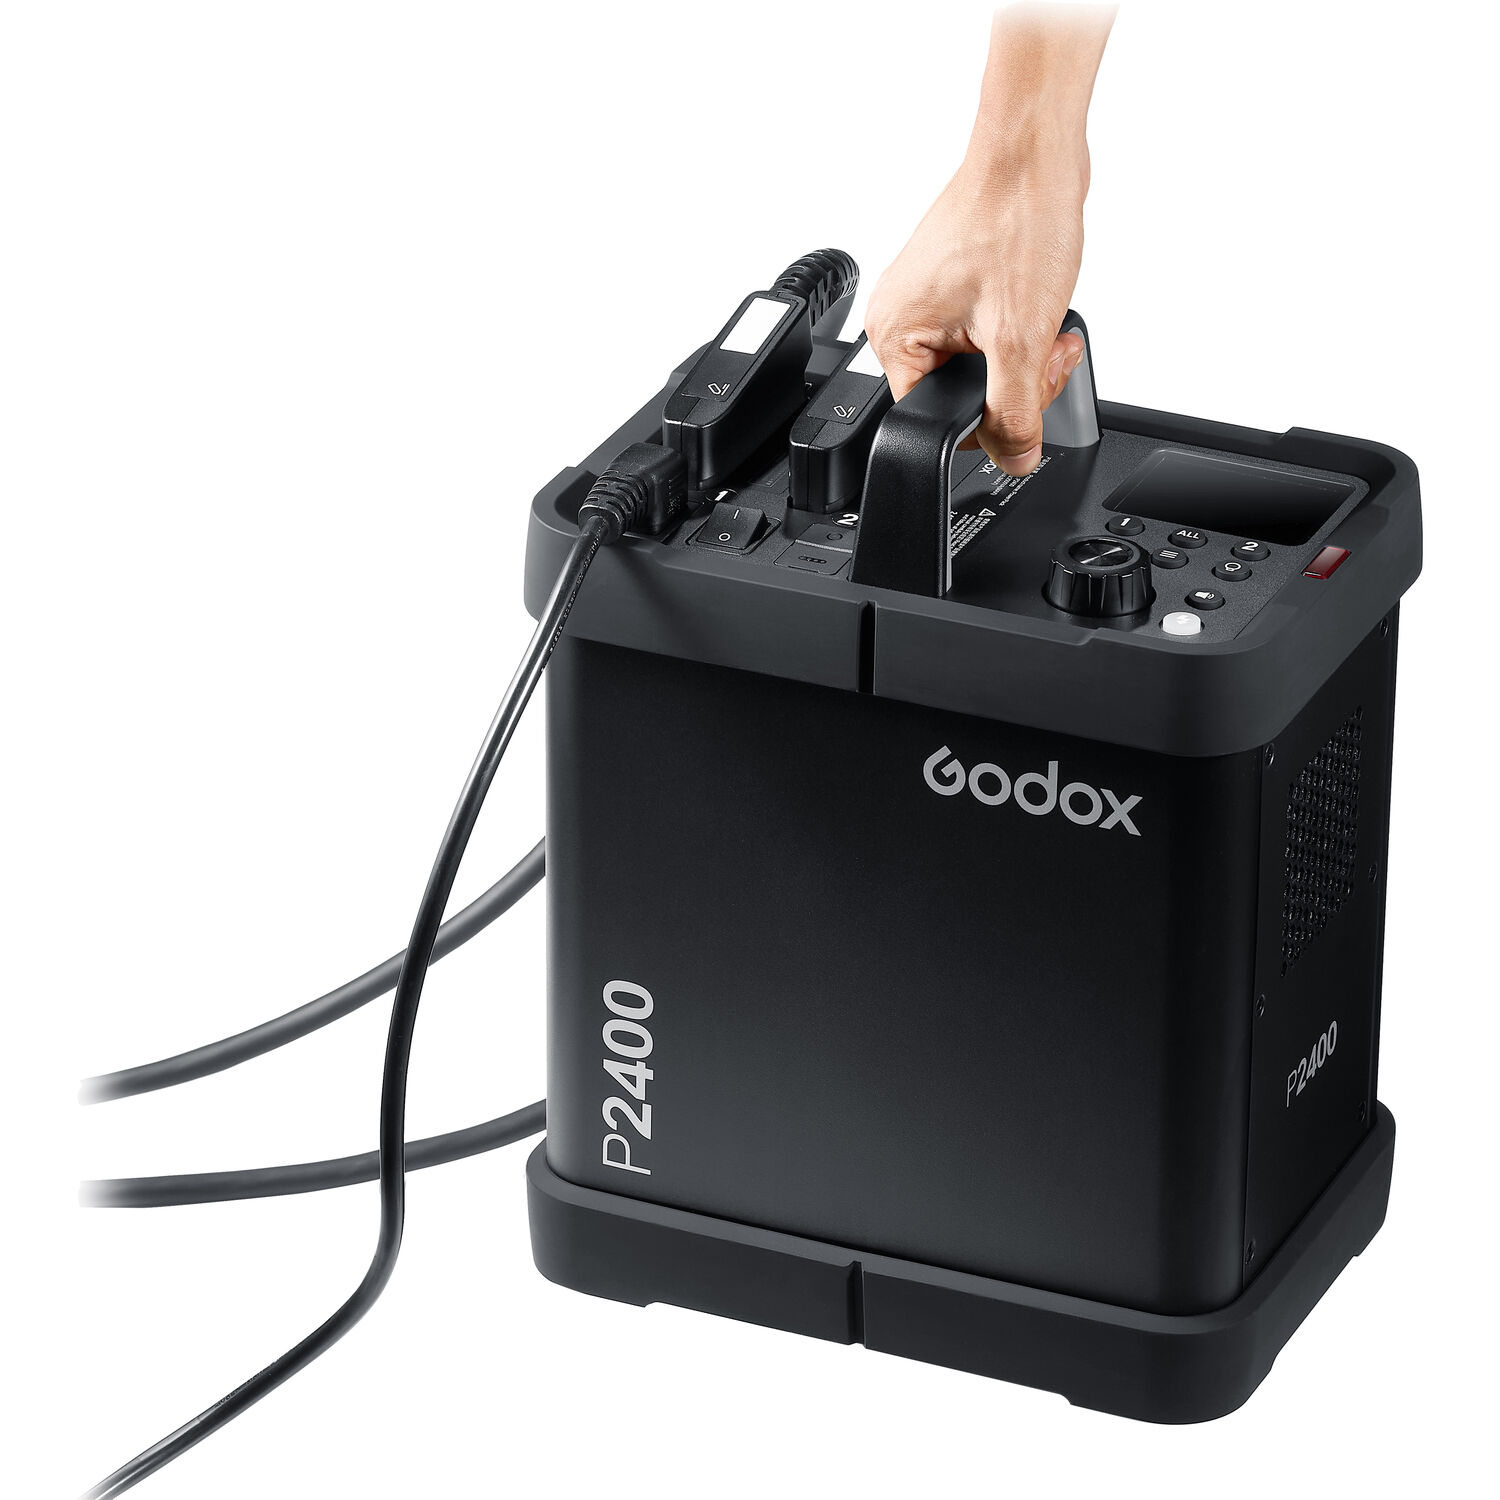 Godox P2400 Power Pack Kit - Hàng Chính Hãng